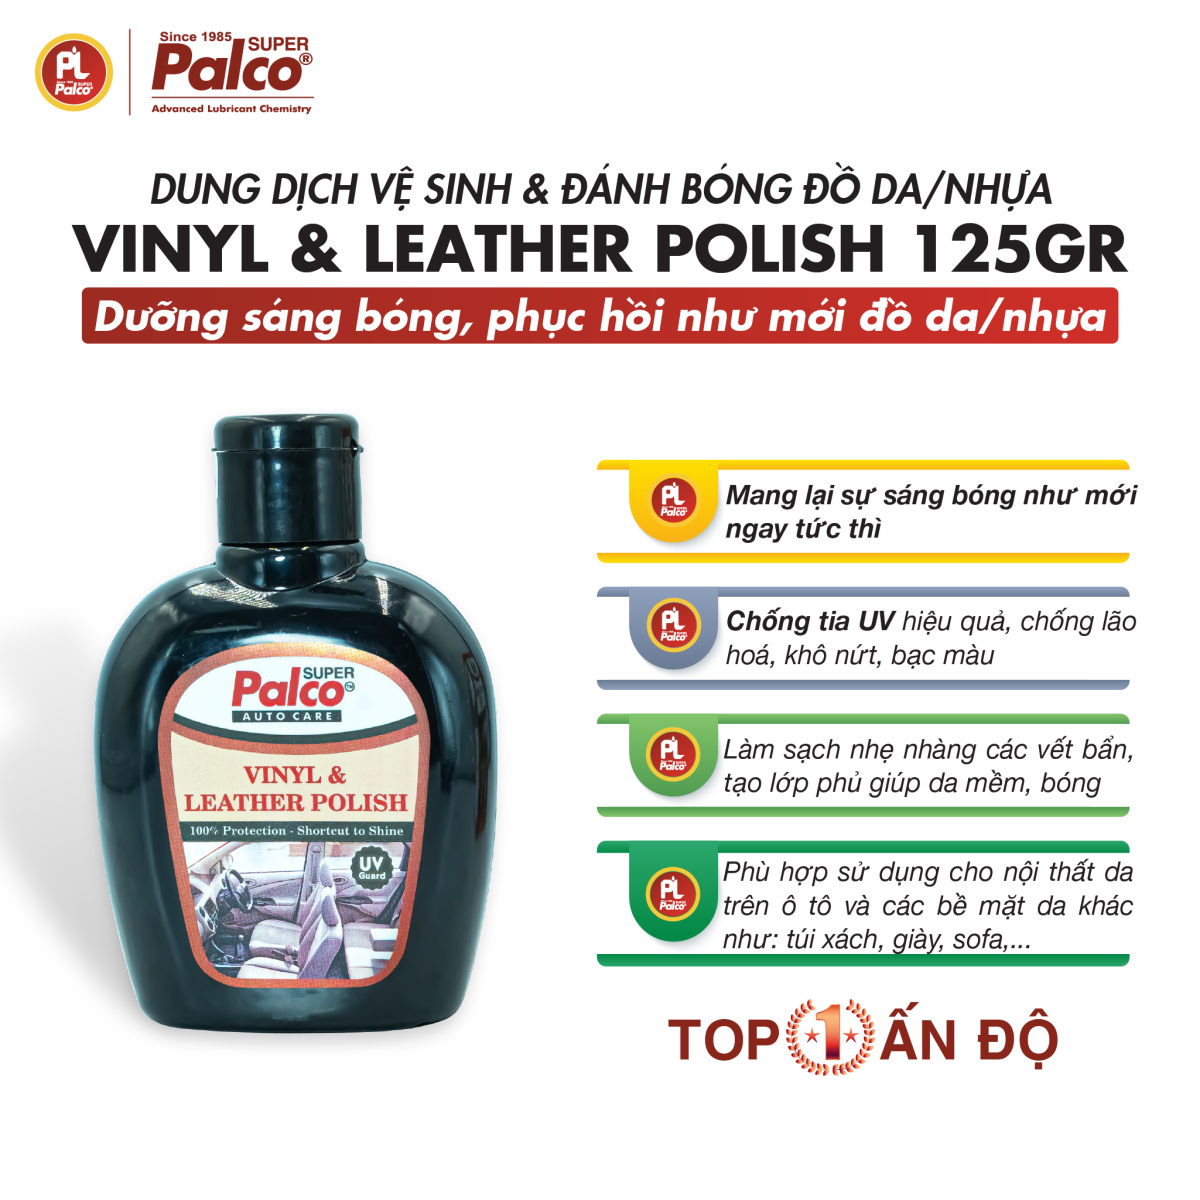 Dung dịch đánh bóng đồ da Palco Vinyl & Leather Polish